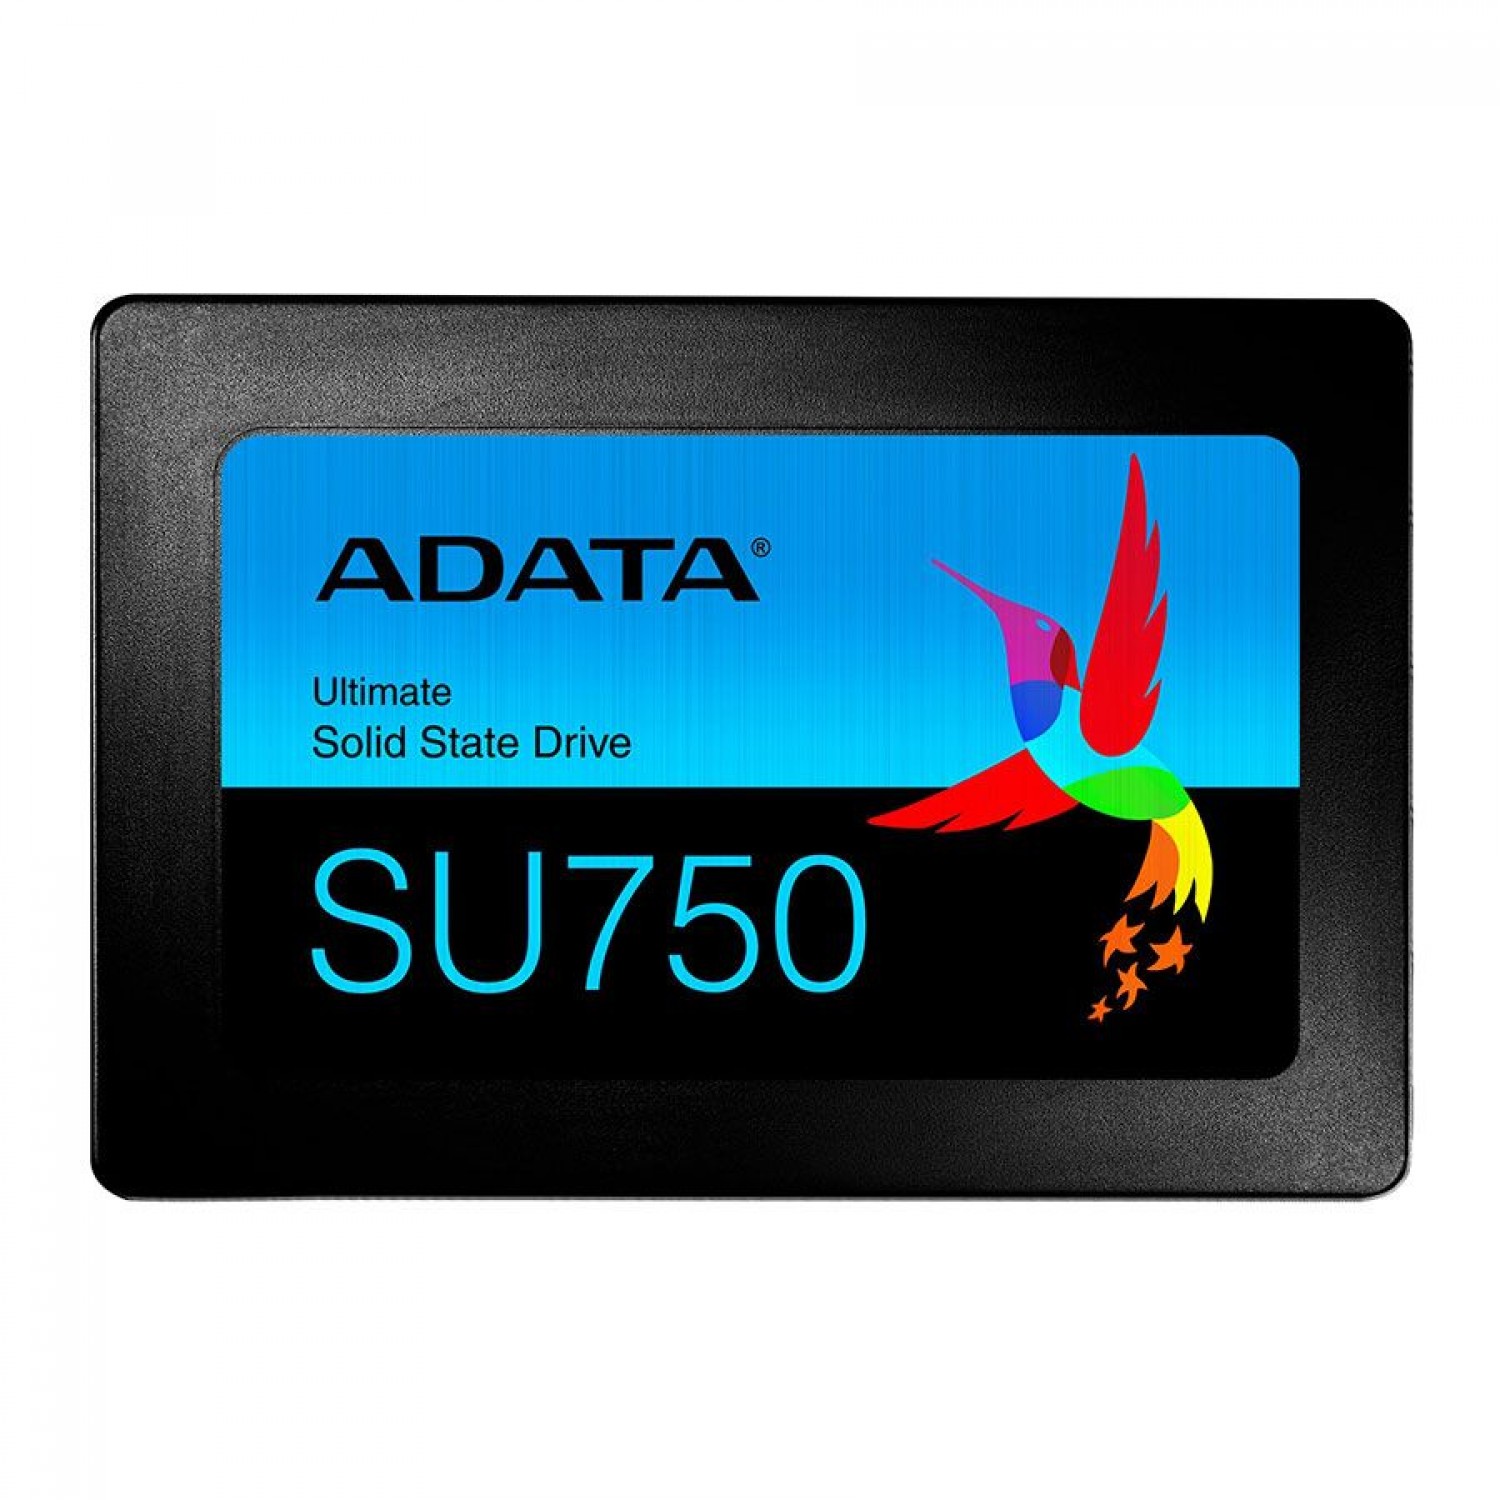 حافظه اس اس دی ADATA Ultimate SU750 512GB - جعبه باز